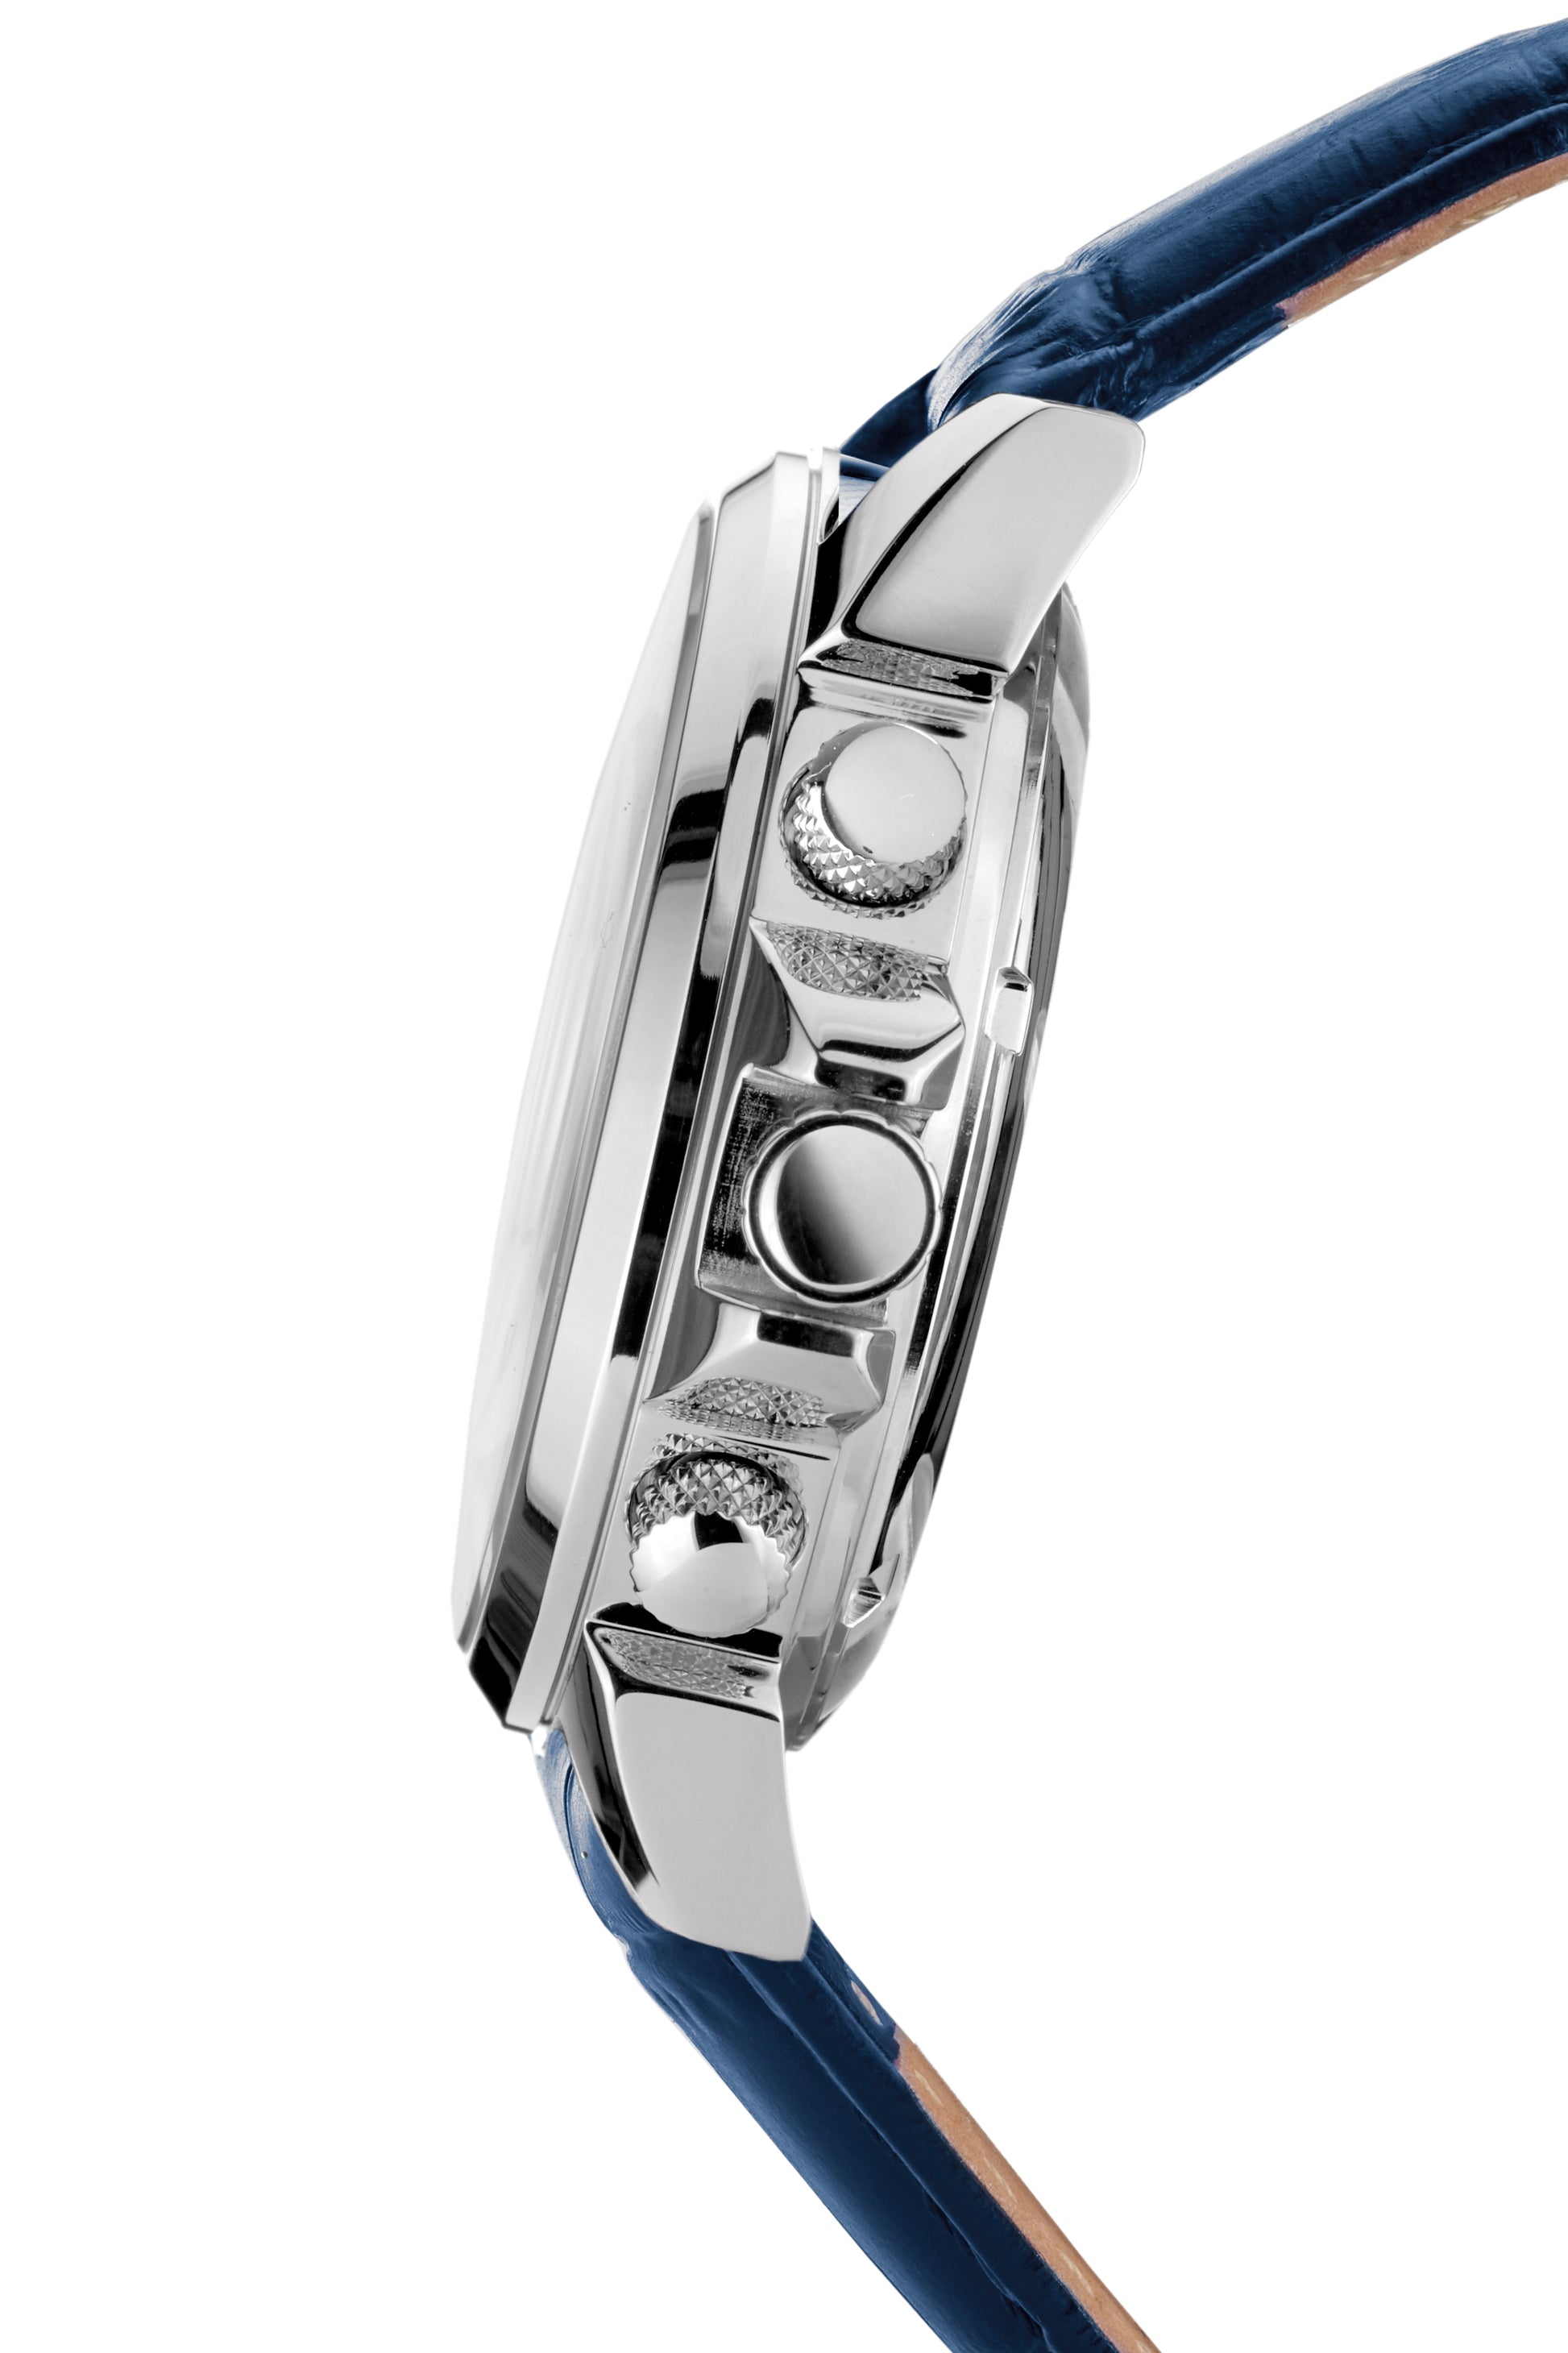 Automatic watches — Étoile Polaire — André Belfort — blue leather